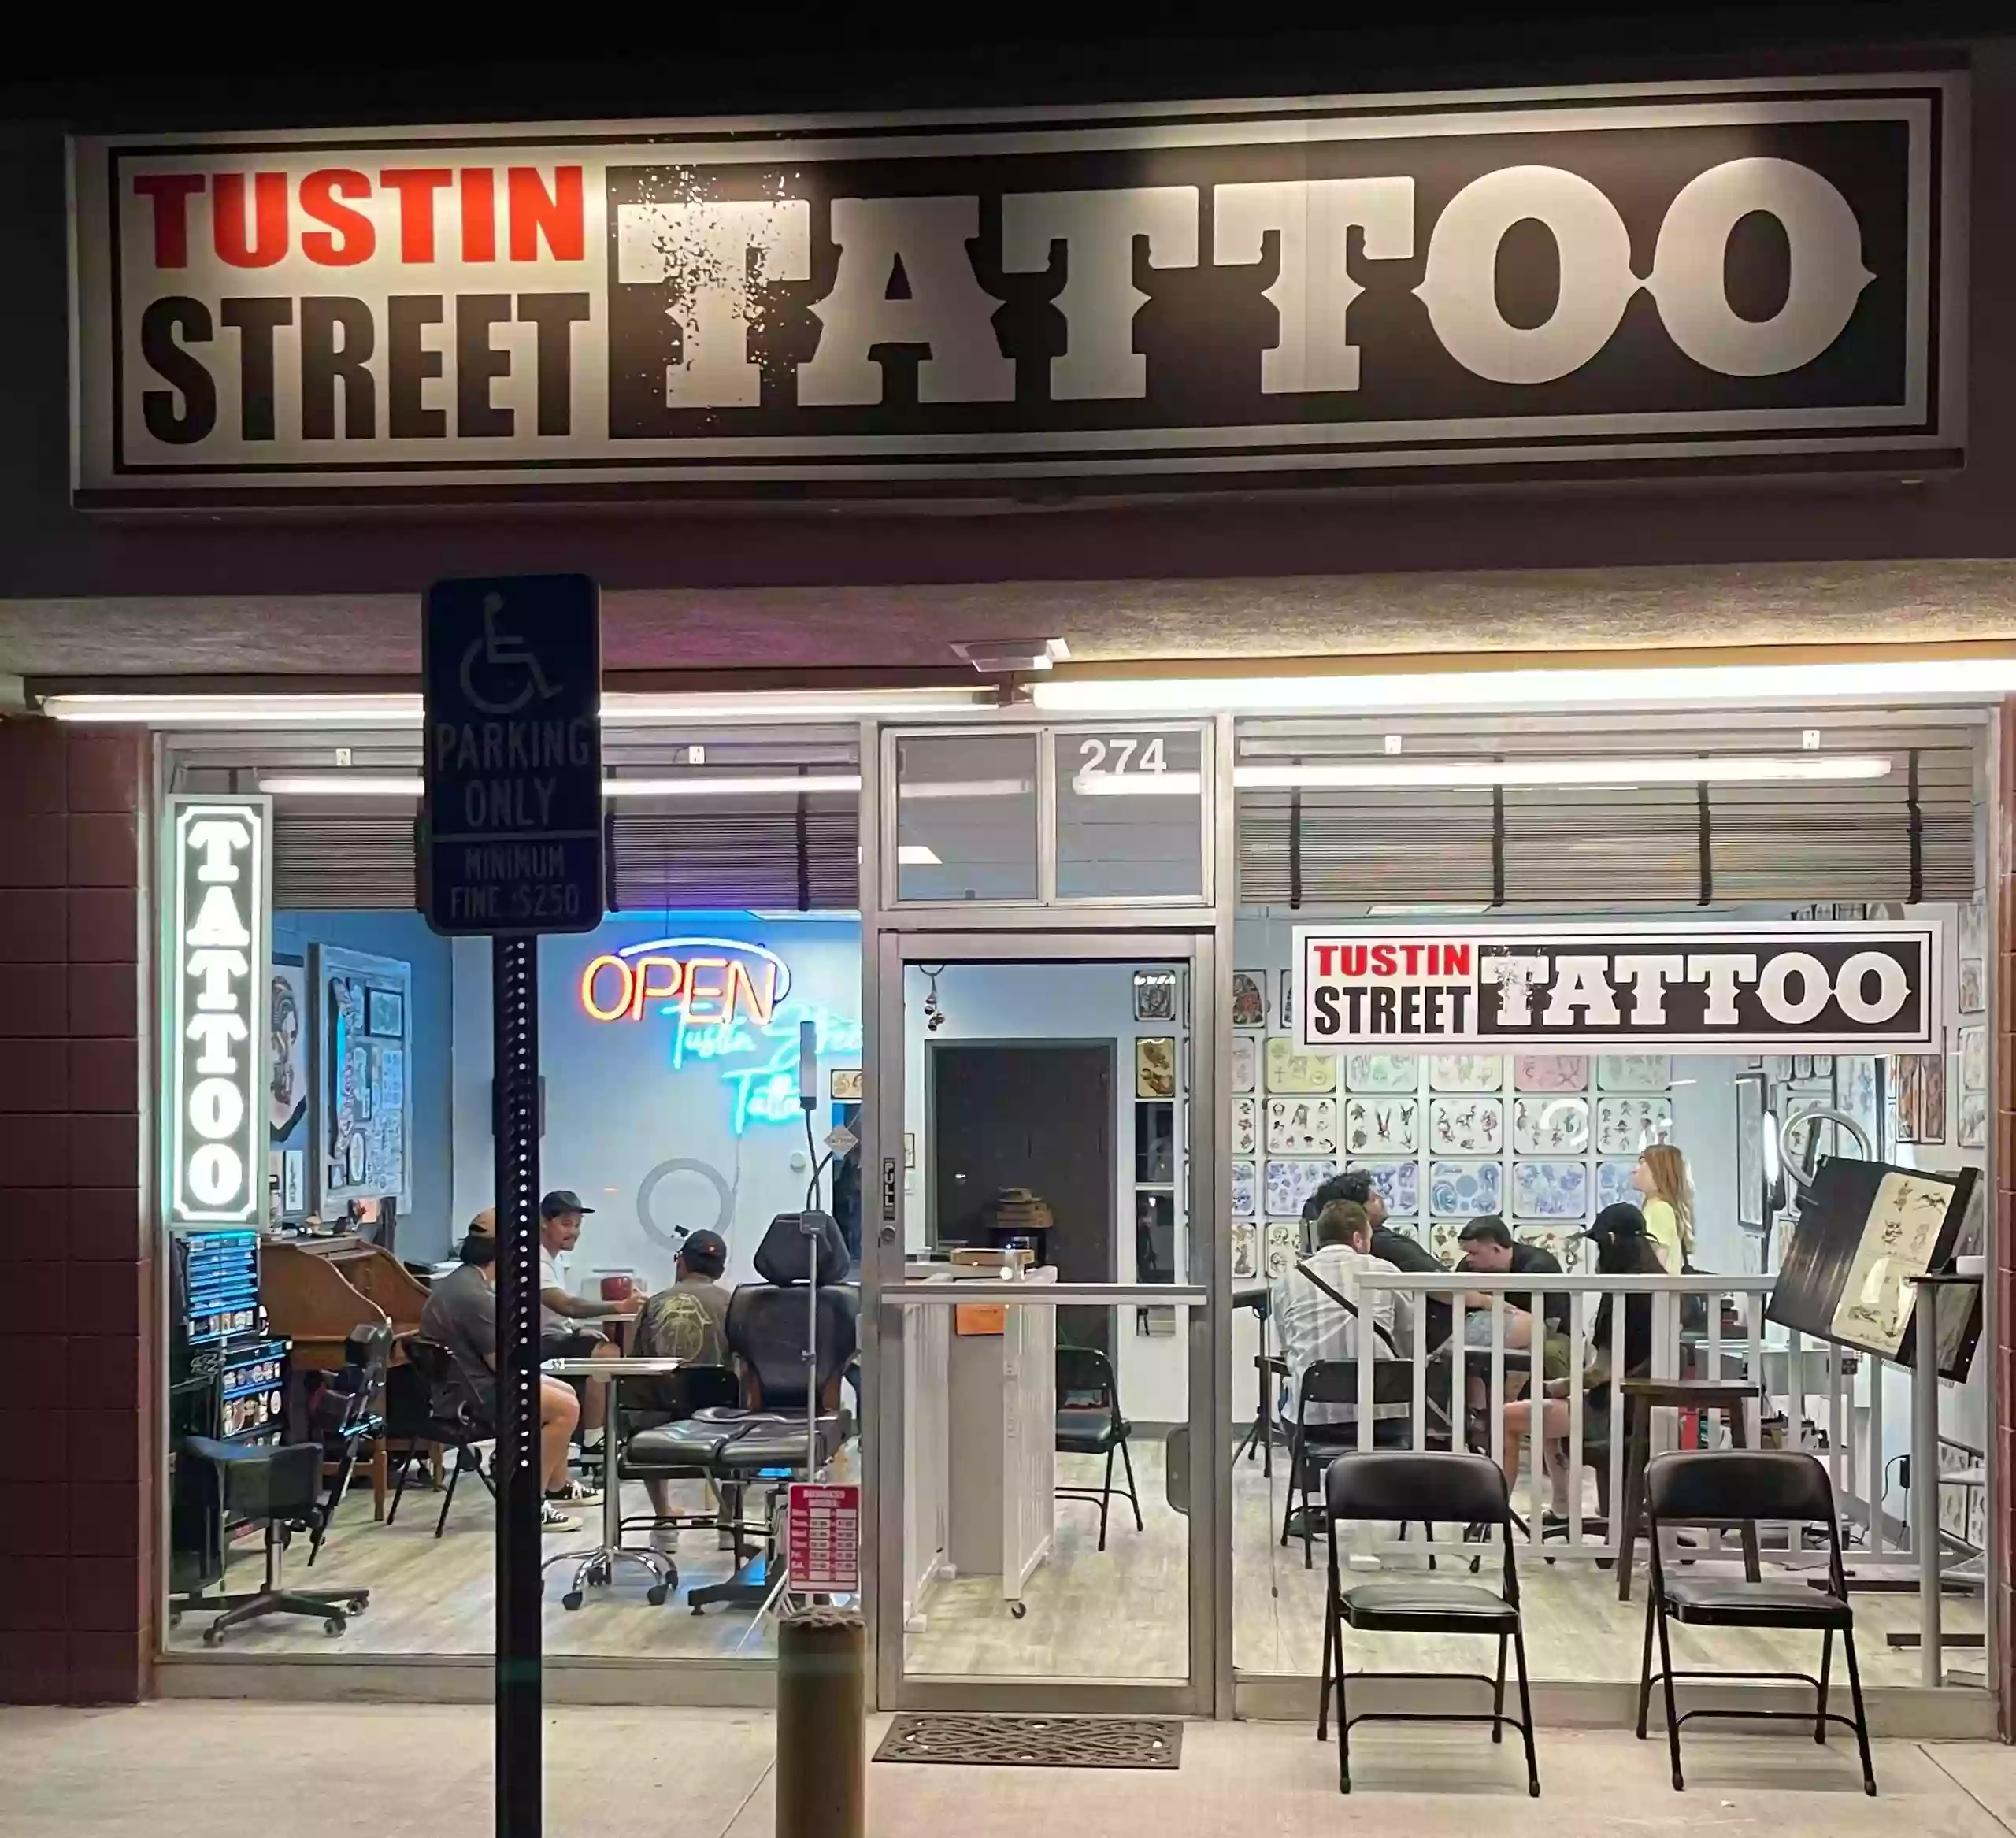 Tustin Street Tattoo